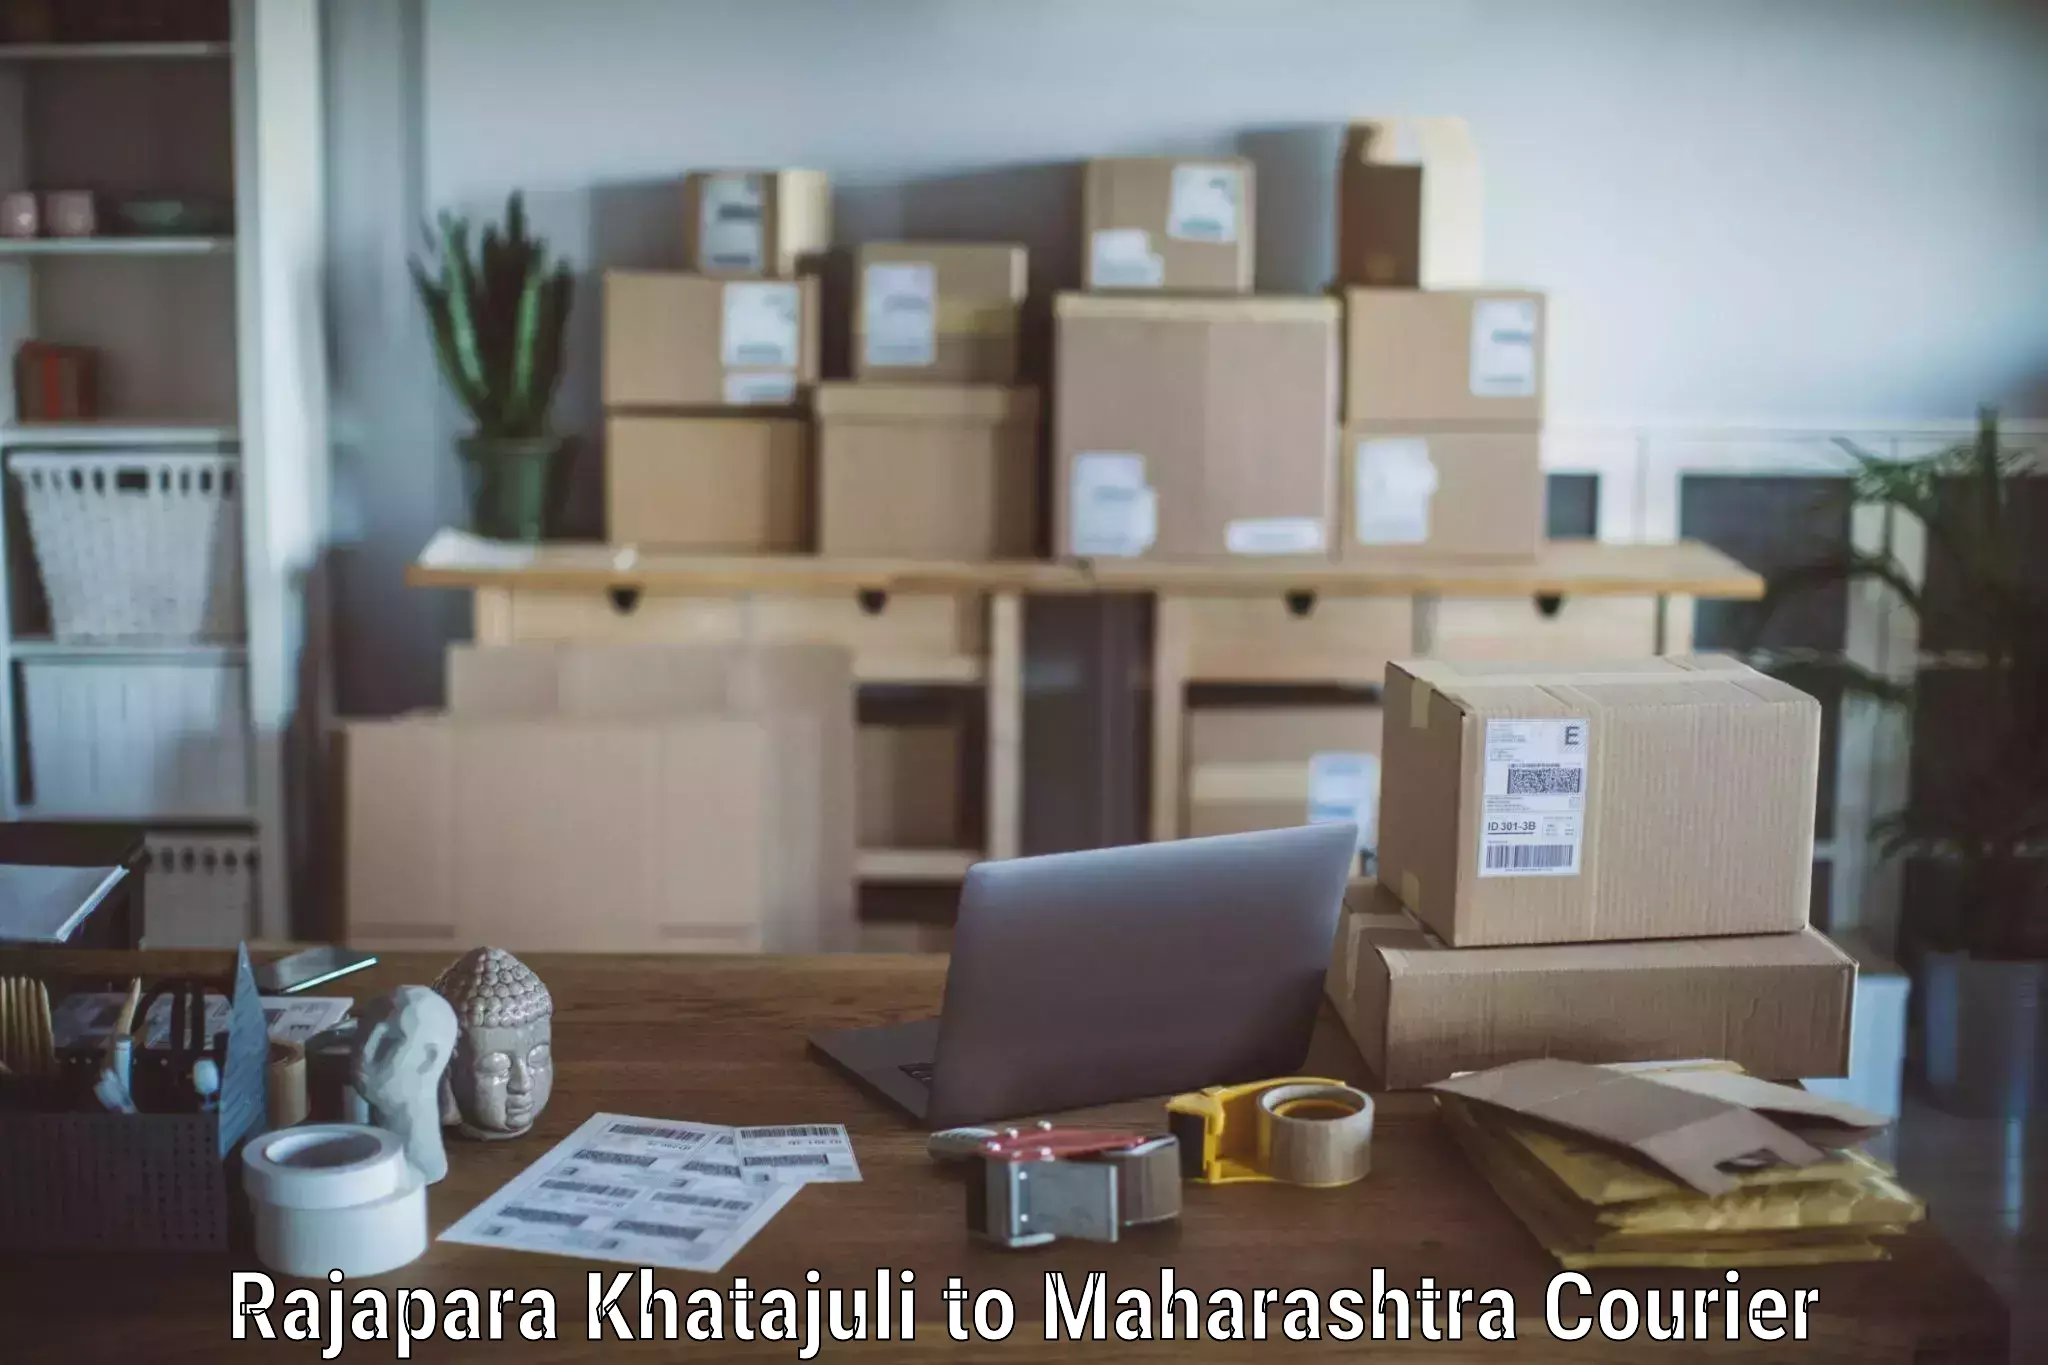 Professional moving company Rajapara Khatajuli to Jamkhed